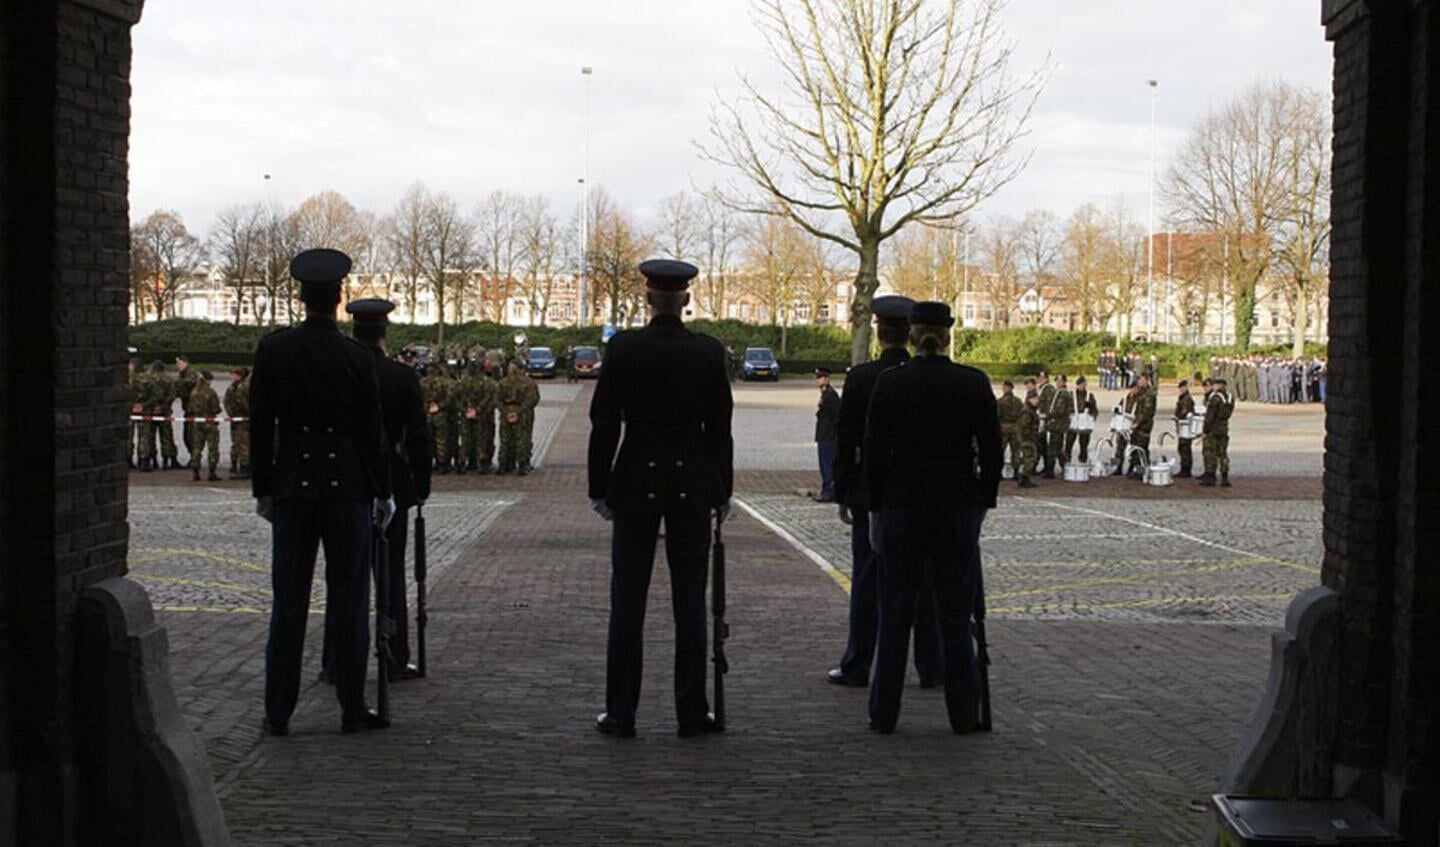 Militaire parade door Breda ter gelegenheid van Dies Natalis, de verjaardag van de KMA. foto Ilse Lukken